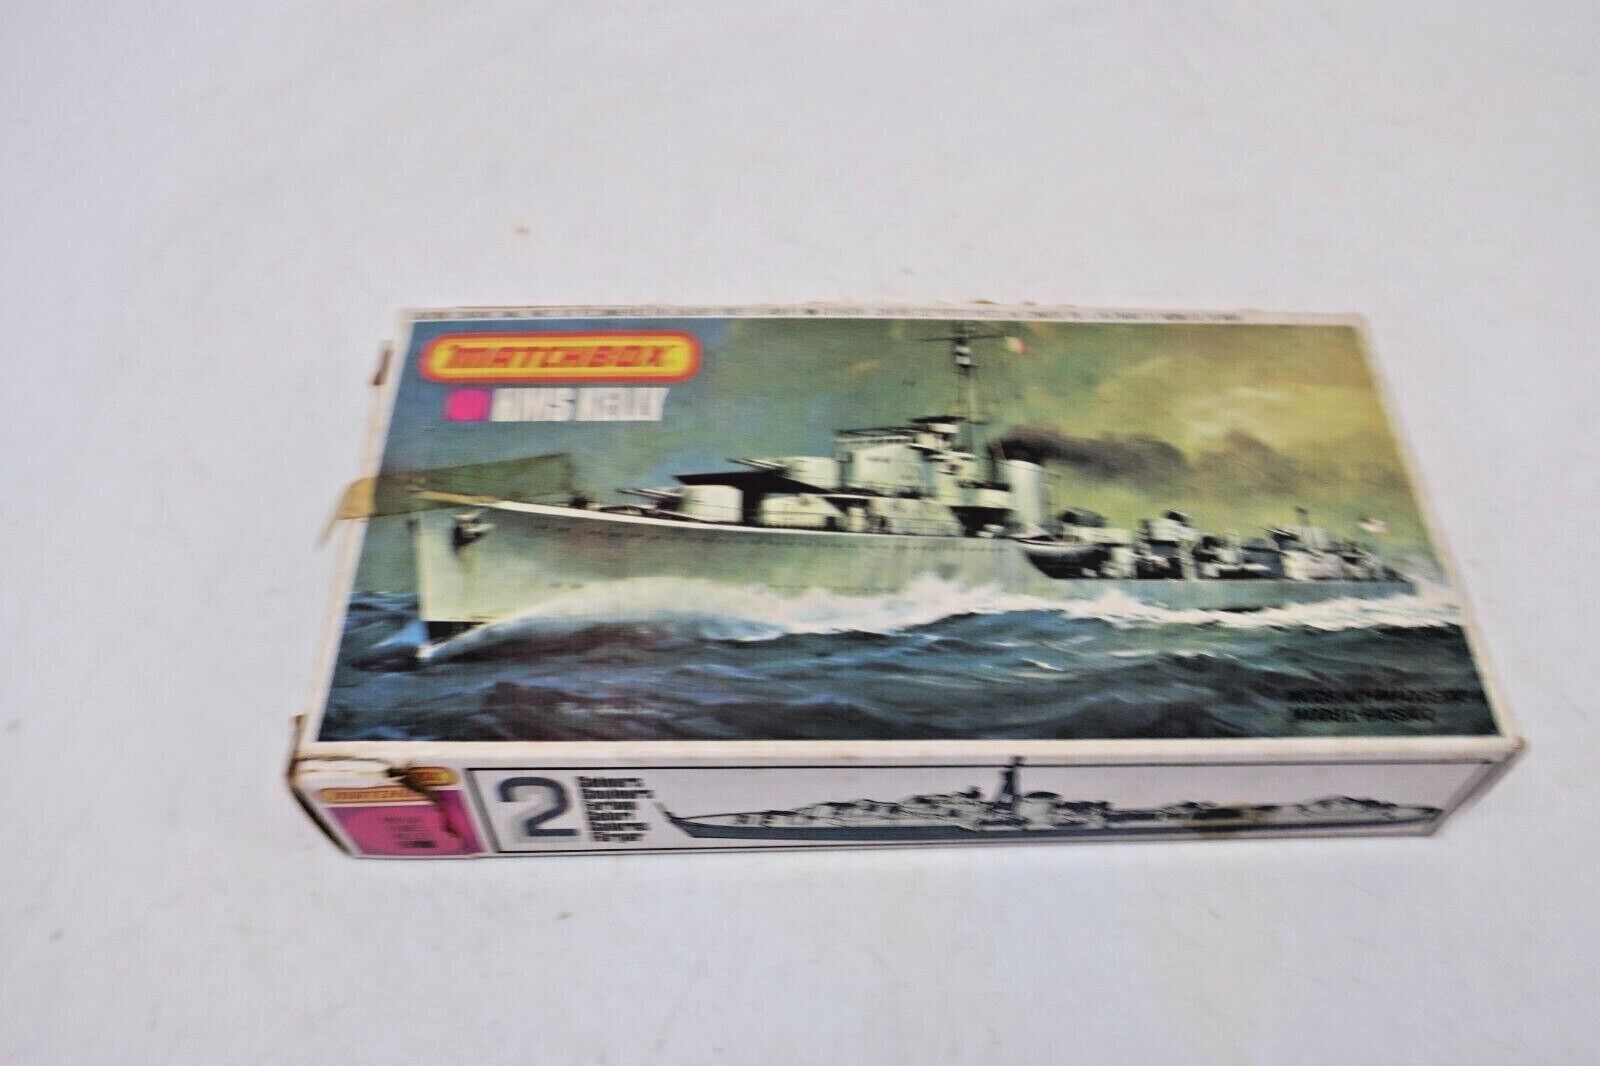 MATCHBOX 1/700 HMS KELLY ( LORD LOUIS MOUNTBATTEN), 1980 ISSUE.